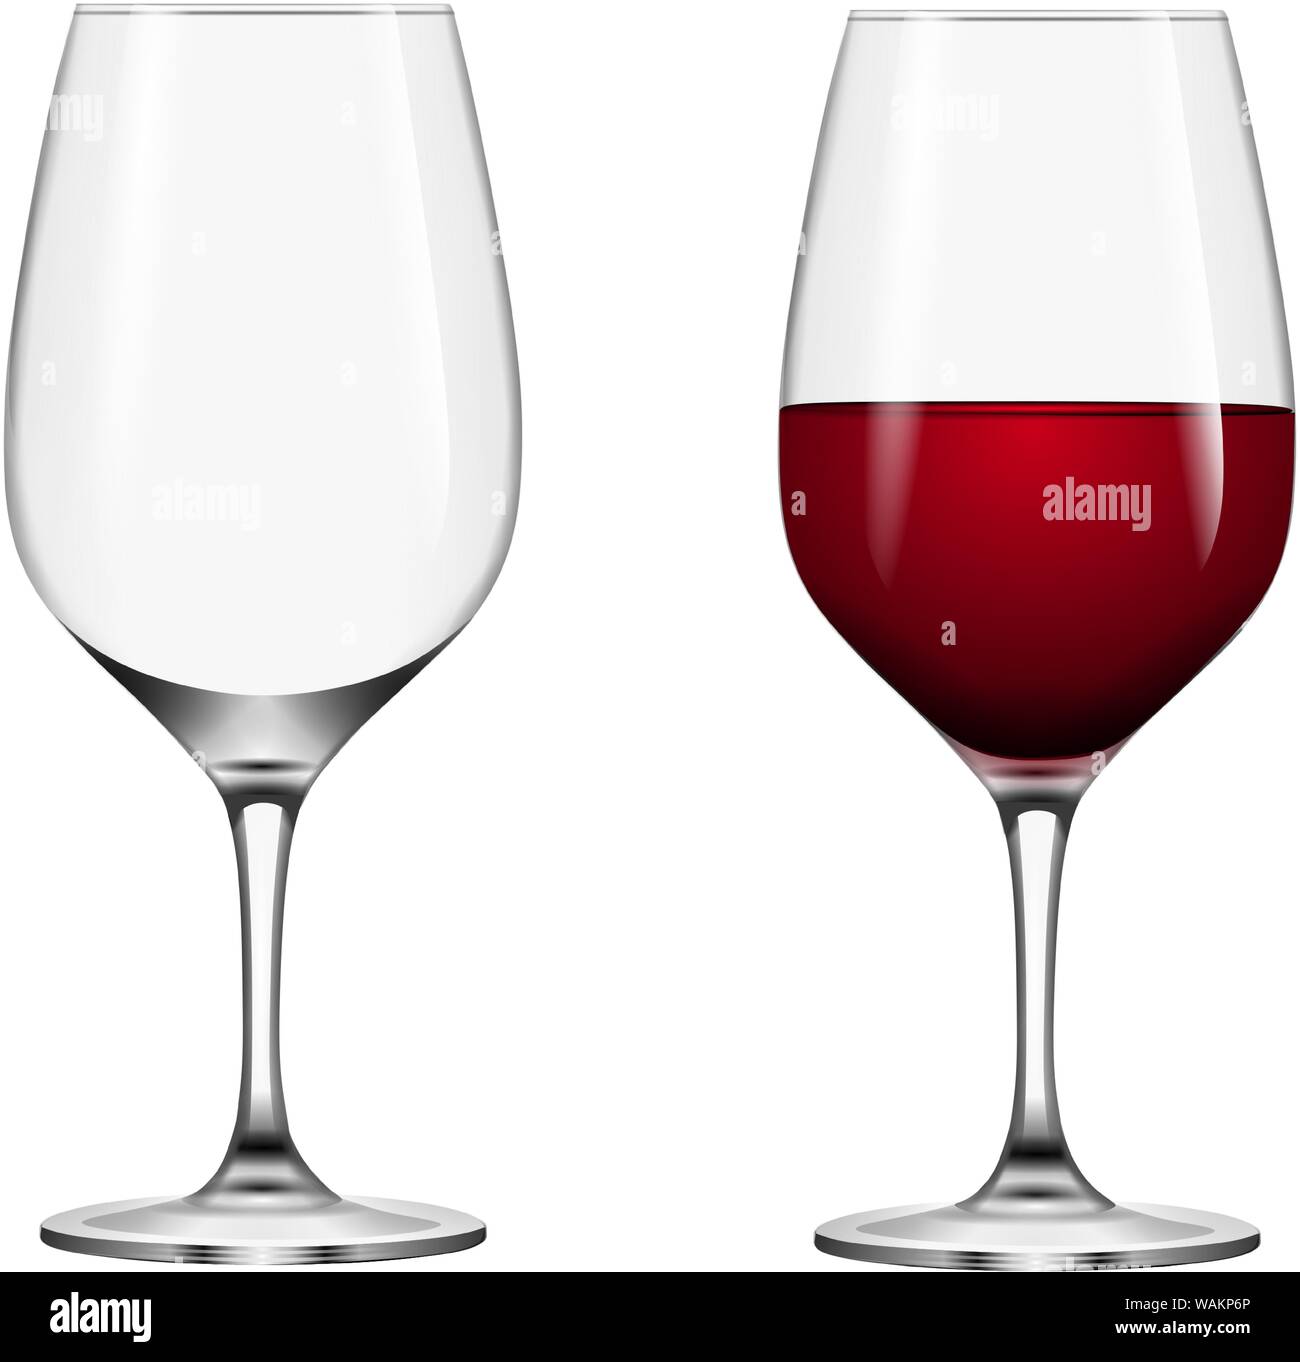 Plein et vide des verres à vin rouge Illustration de Vecteur